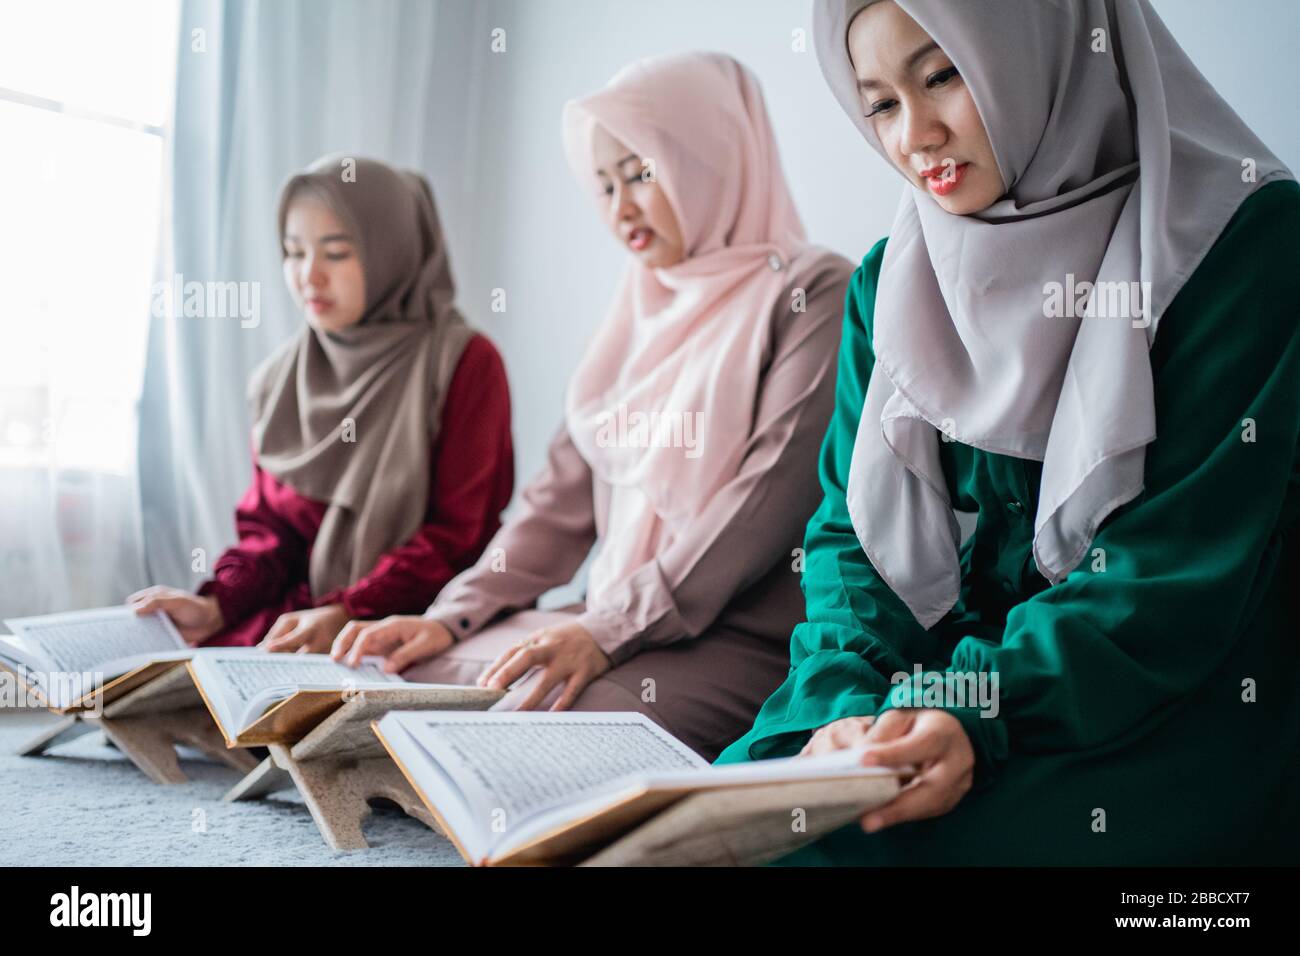 Trois musulmans asiatiques lisent et apprennent le livre Saint de l'Al-Quran ensemble assis à l'étage dans la chambre Banque D'Images